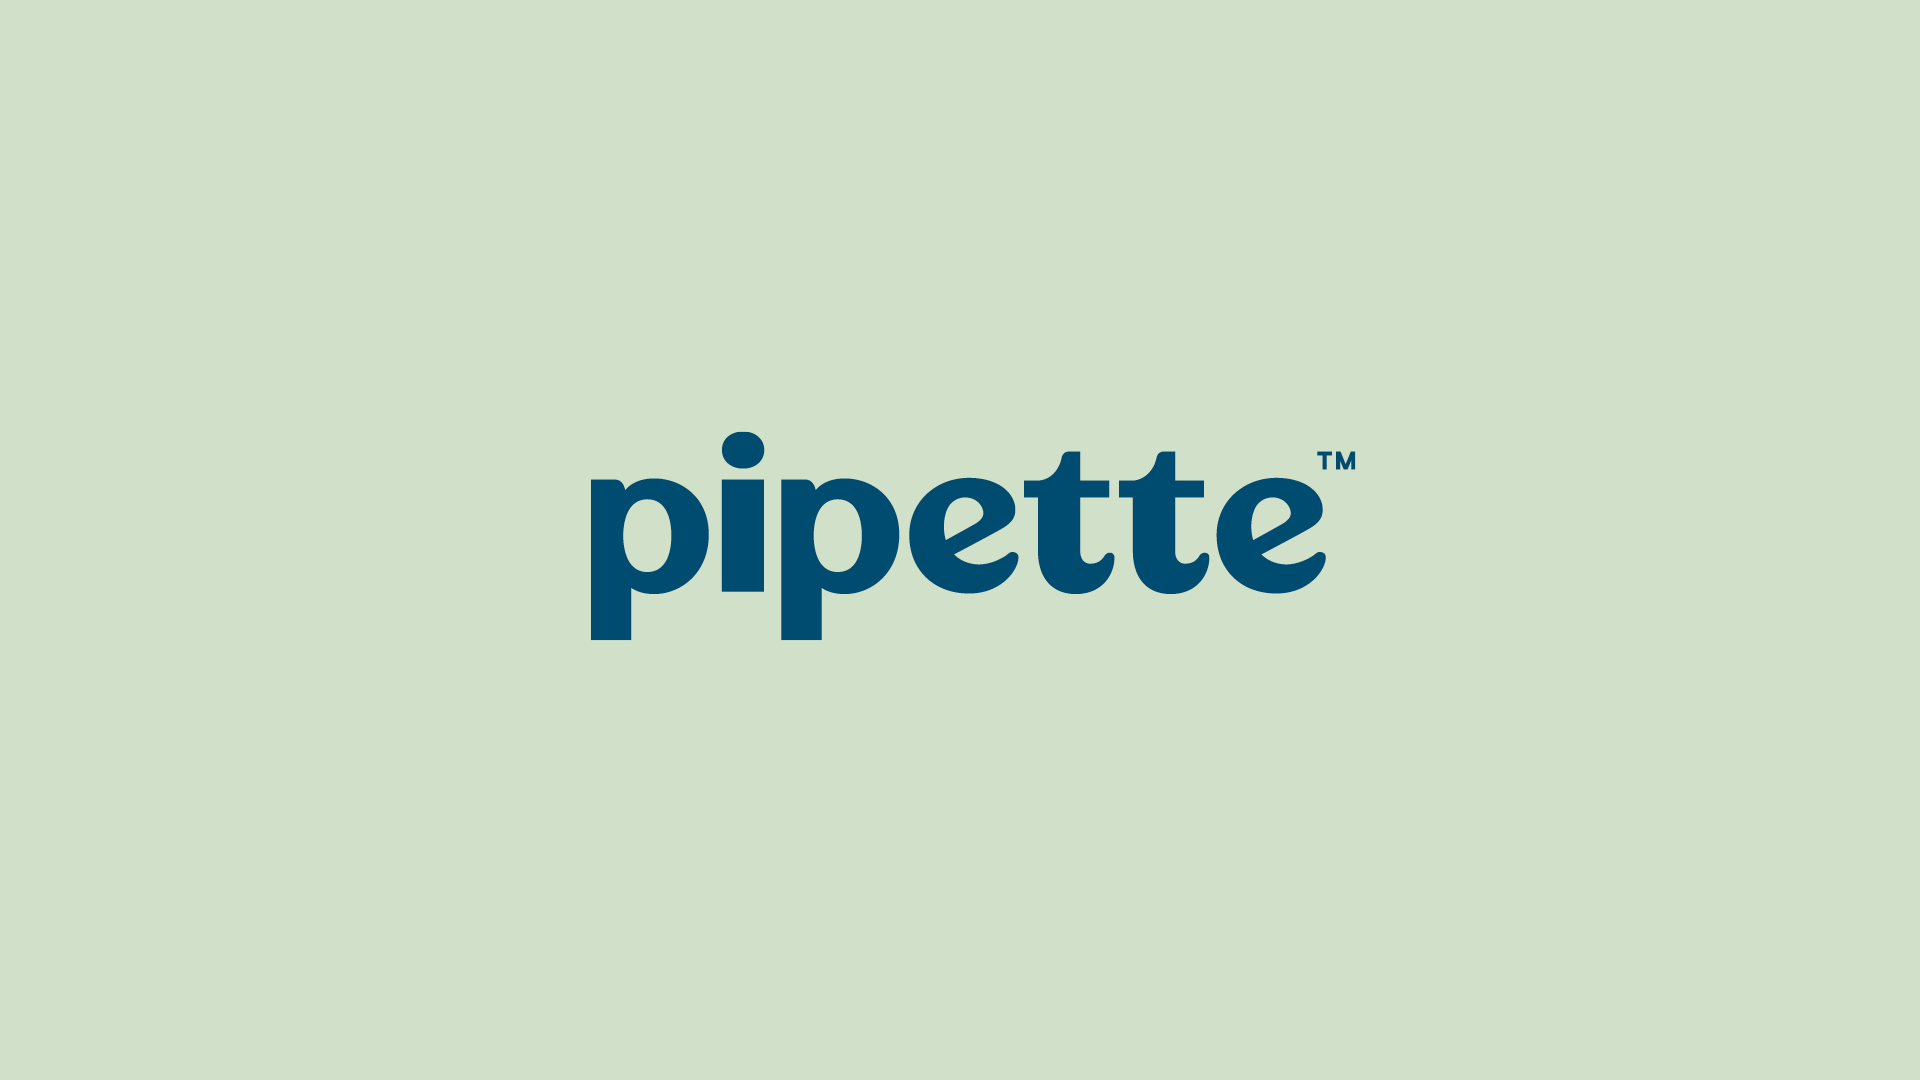 Cover image: Pipette